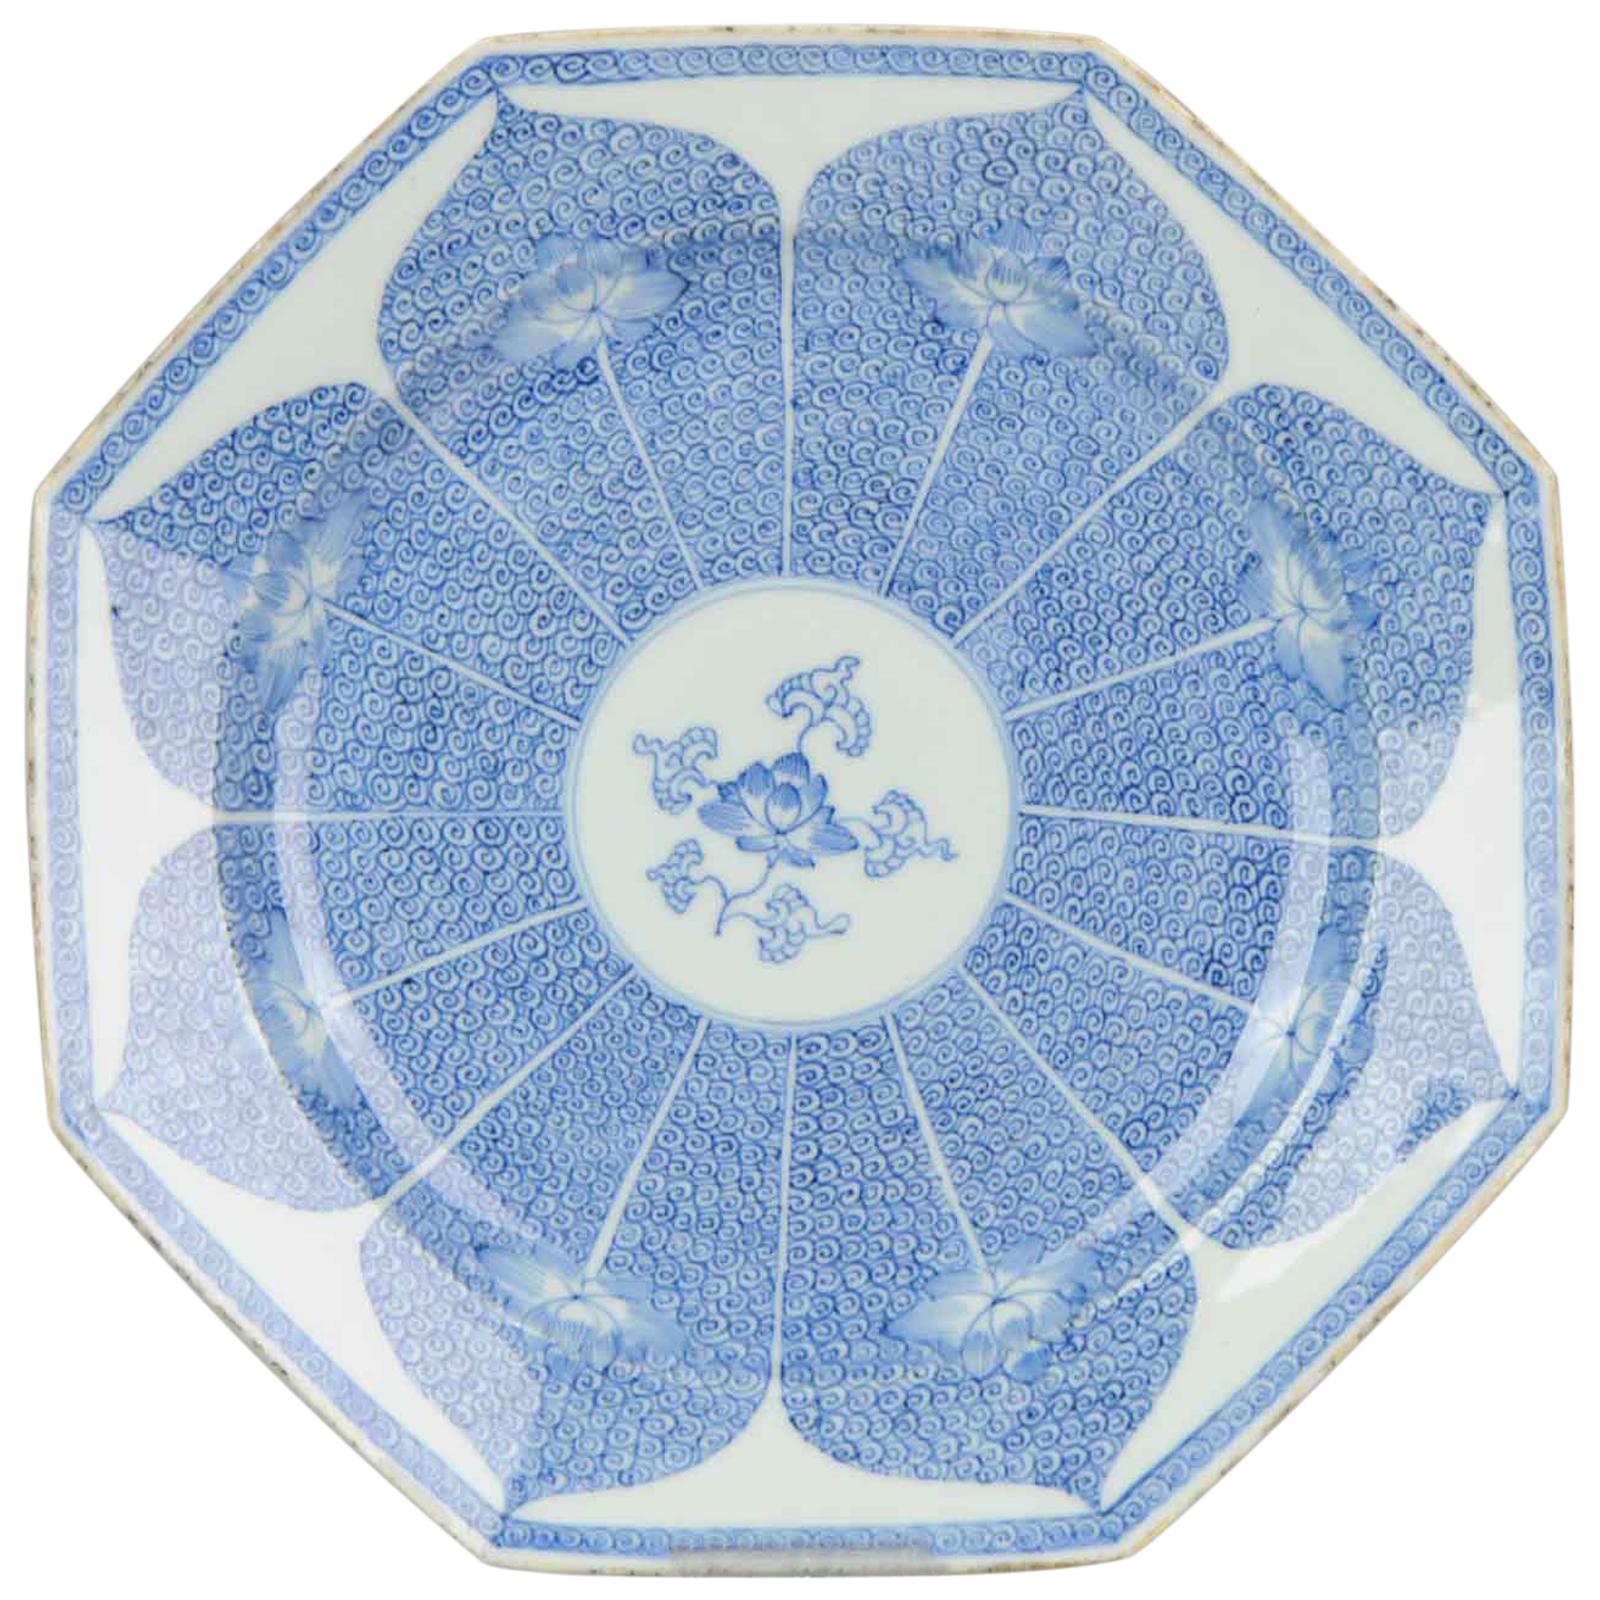 Chinesischer Qing-Porzellanteller des 18. Jahrhunderts, blaue und weiße achteckige Lotusblume